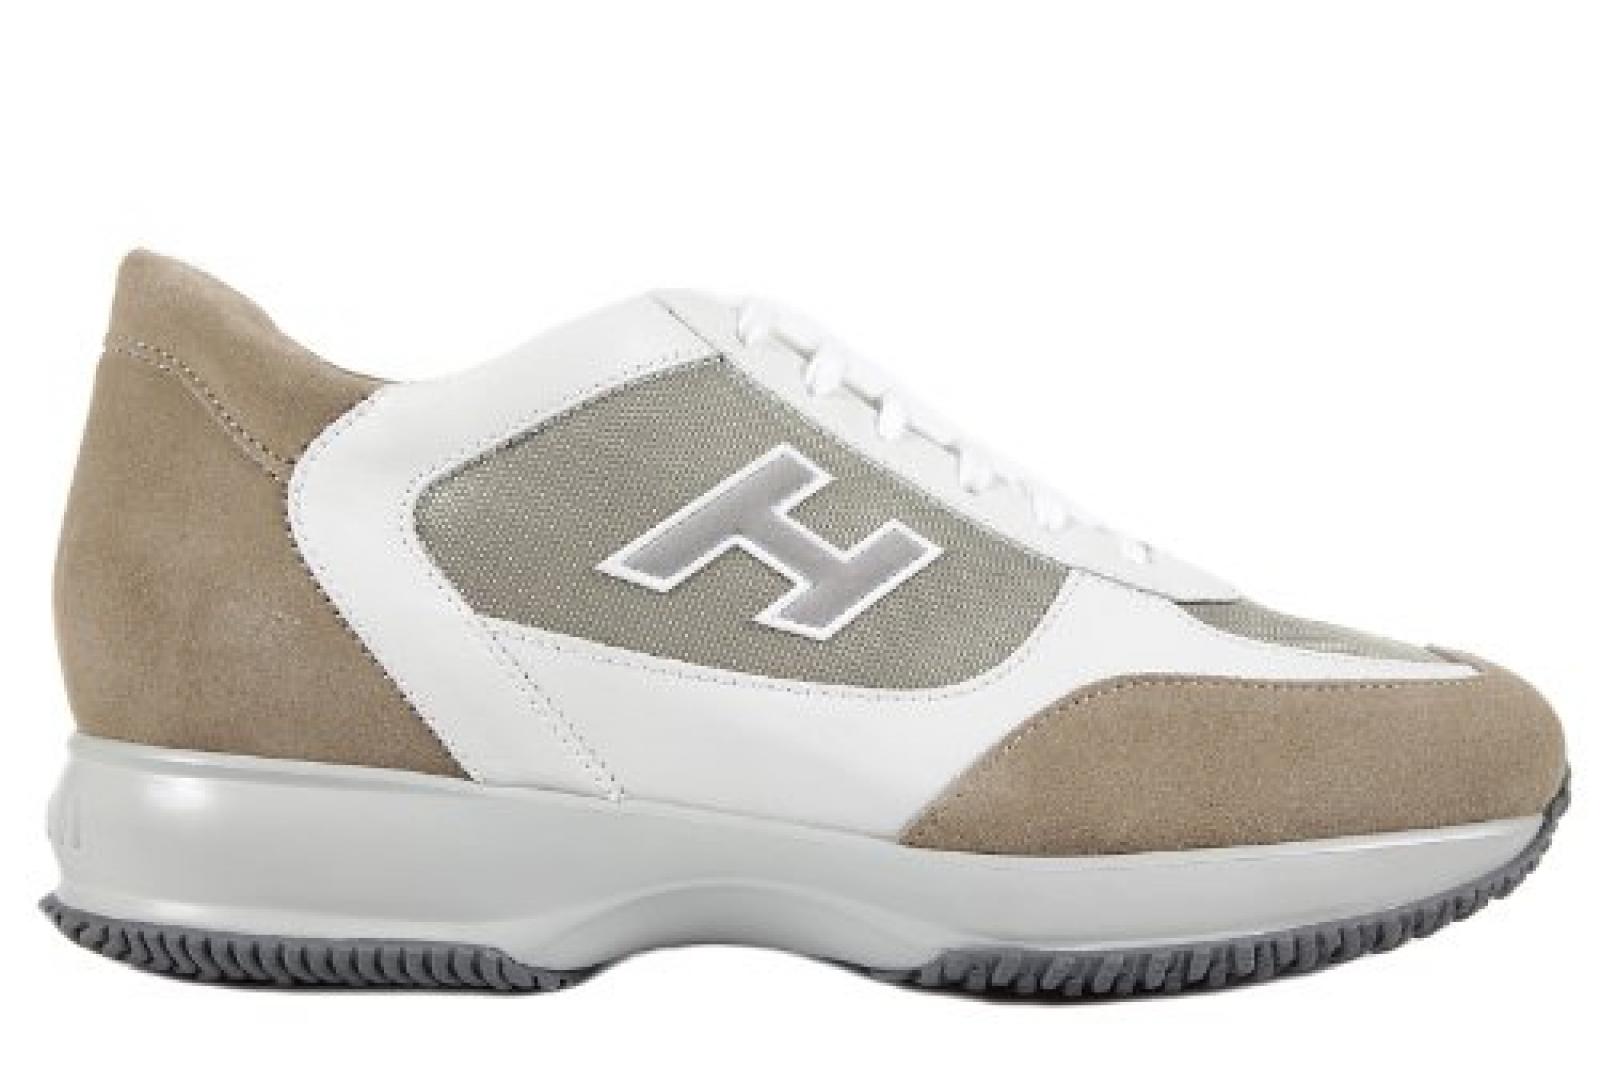 Hogan Herrenschuhe Herren Wildleder Sneakers Schuhe interactive Weiß 